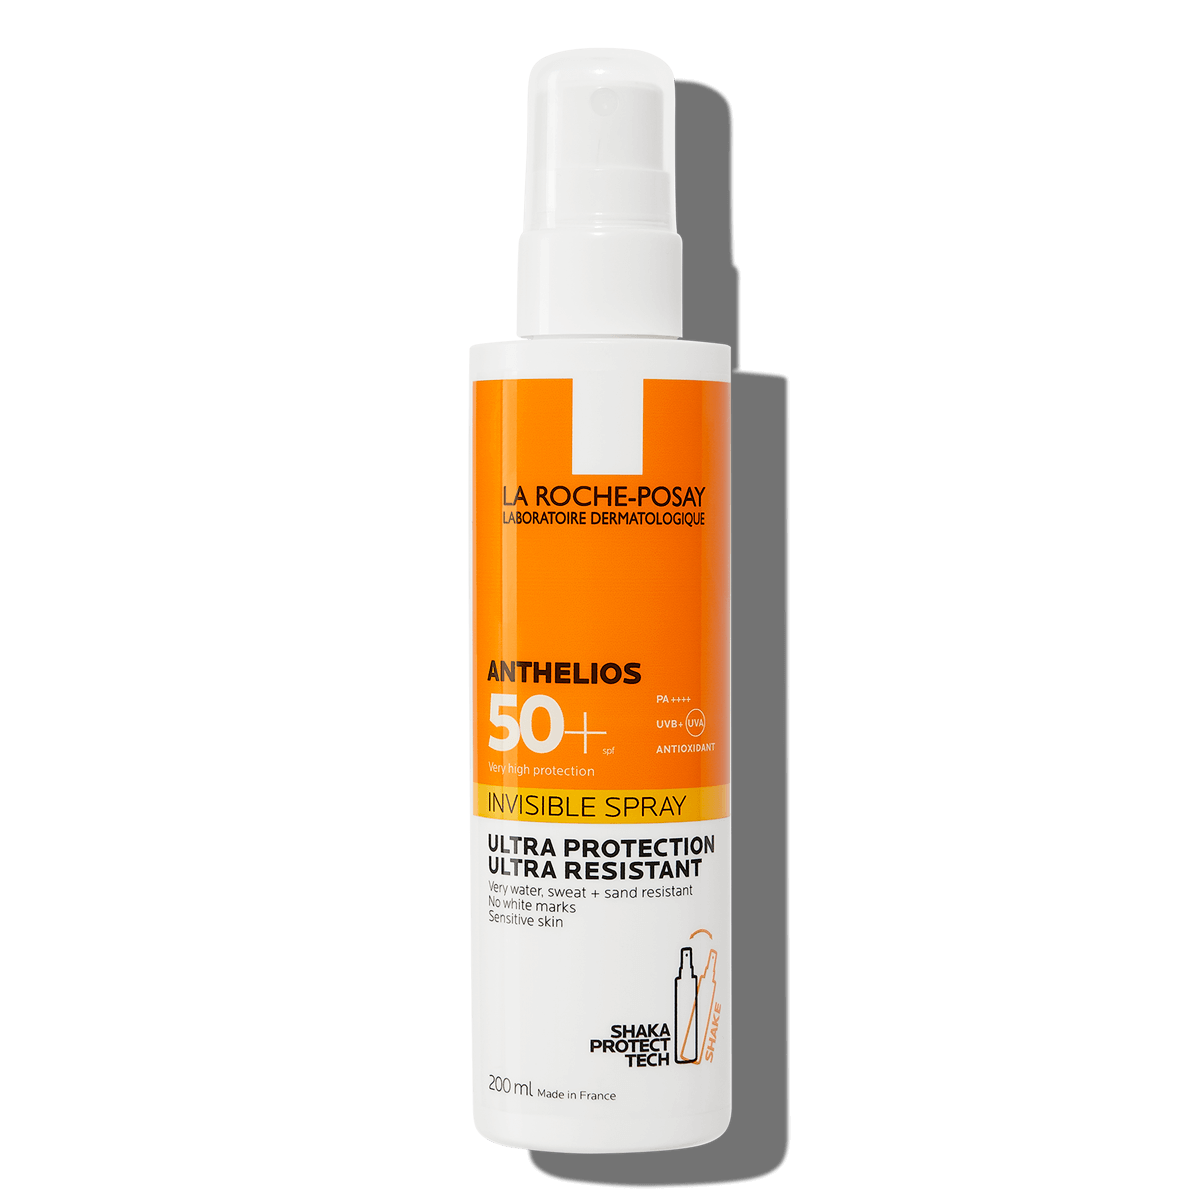 La Roche Posay Anthelios Invisible Spray SPF50+ Facial and Body Sunscreen Spray